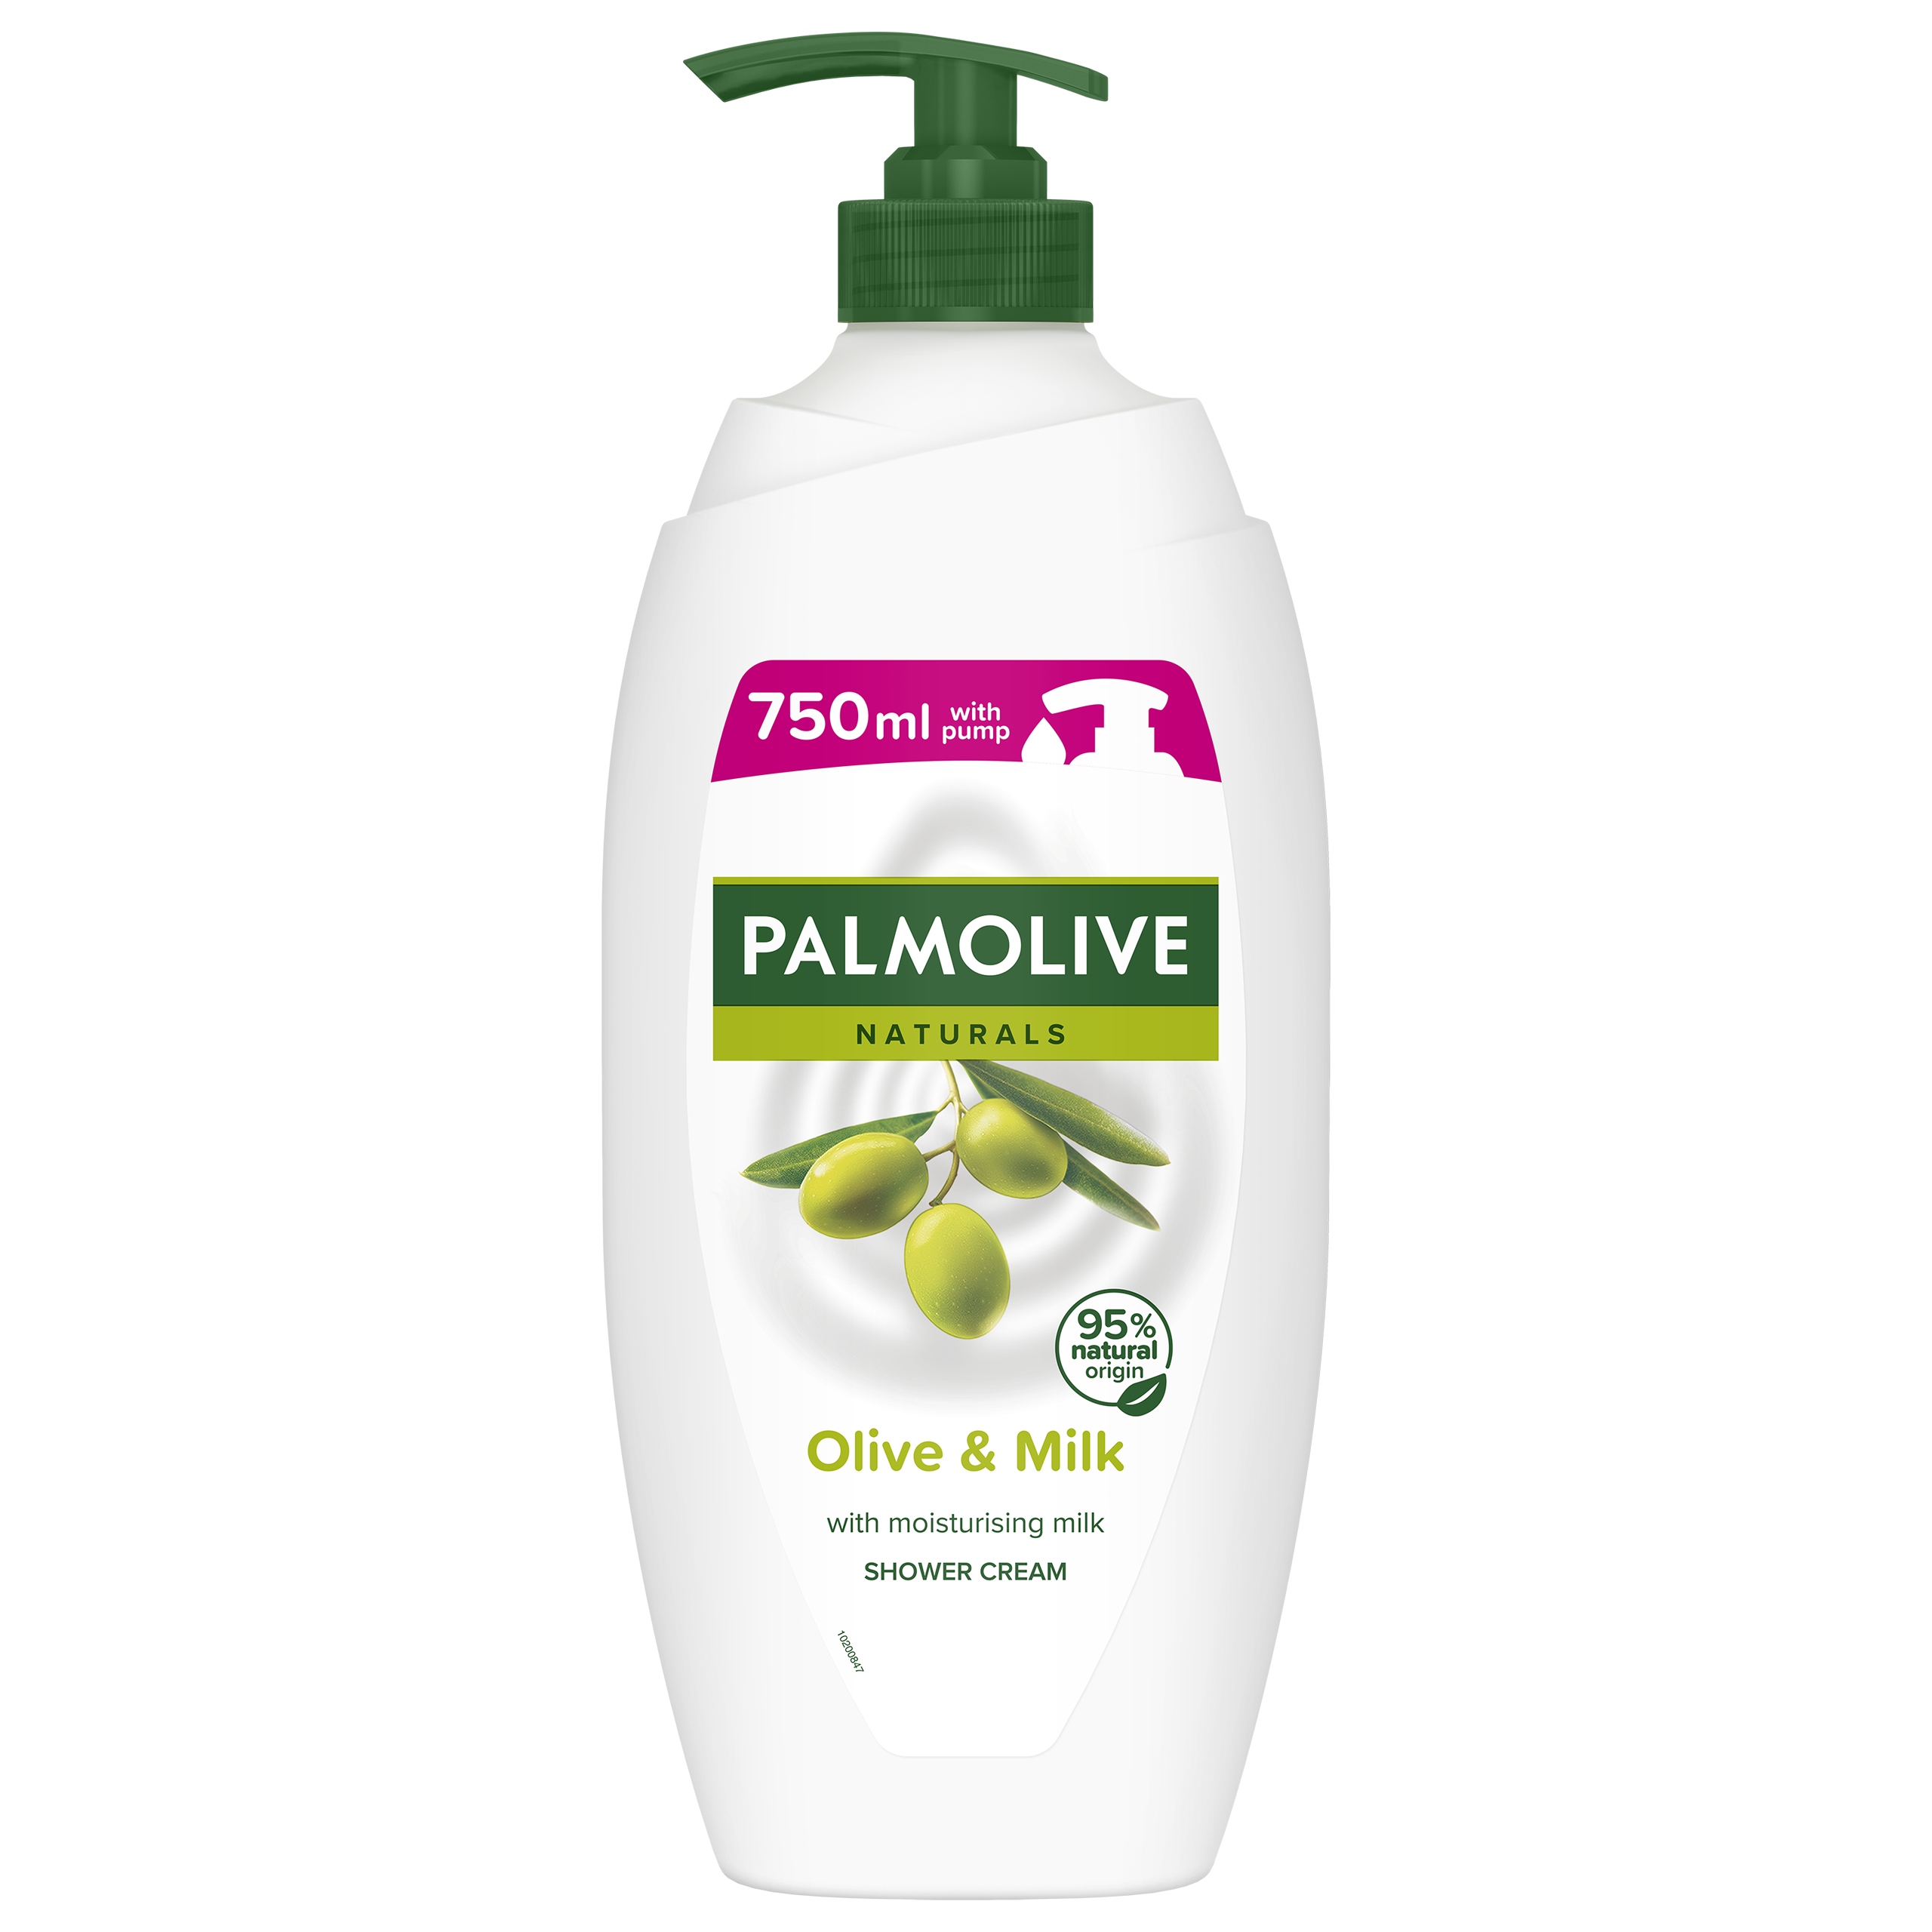 Palmolive гель для душа 750 мл. Palmolive 750 ml Shower Gel. Palmolive 750 мл. Palmolive Olive 750. Palmolive гель Натурэль для душа 500 мл "Olive & Milk".